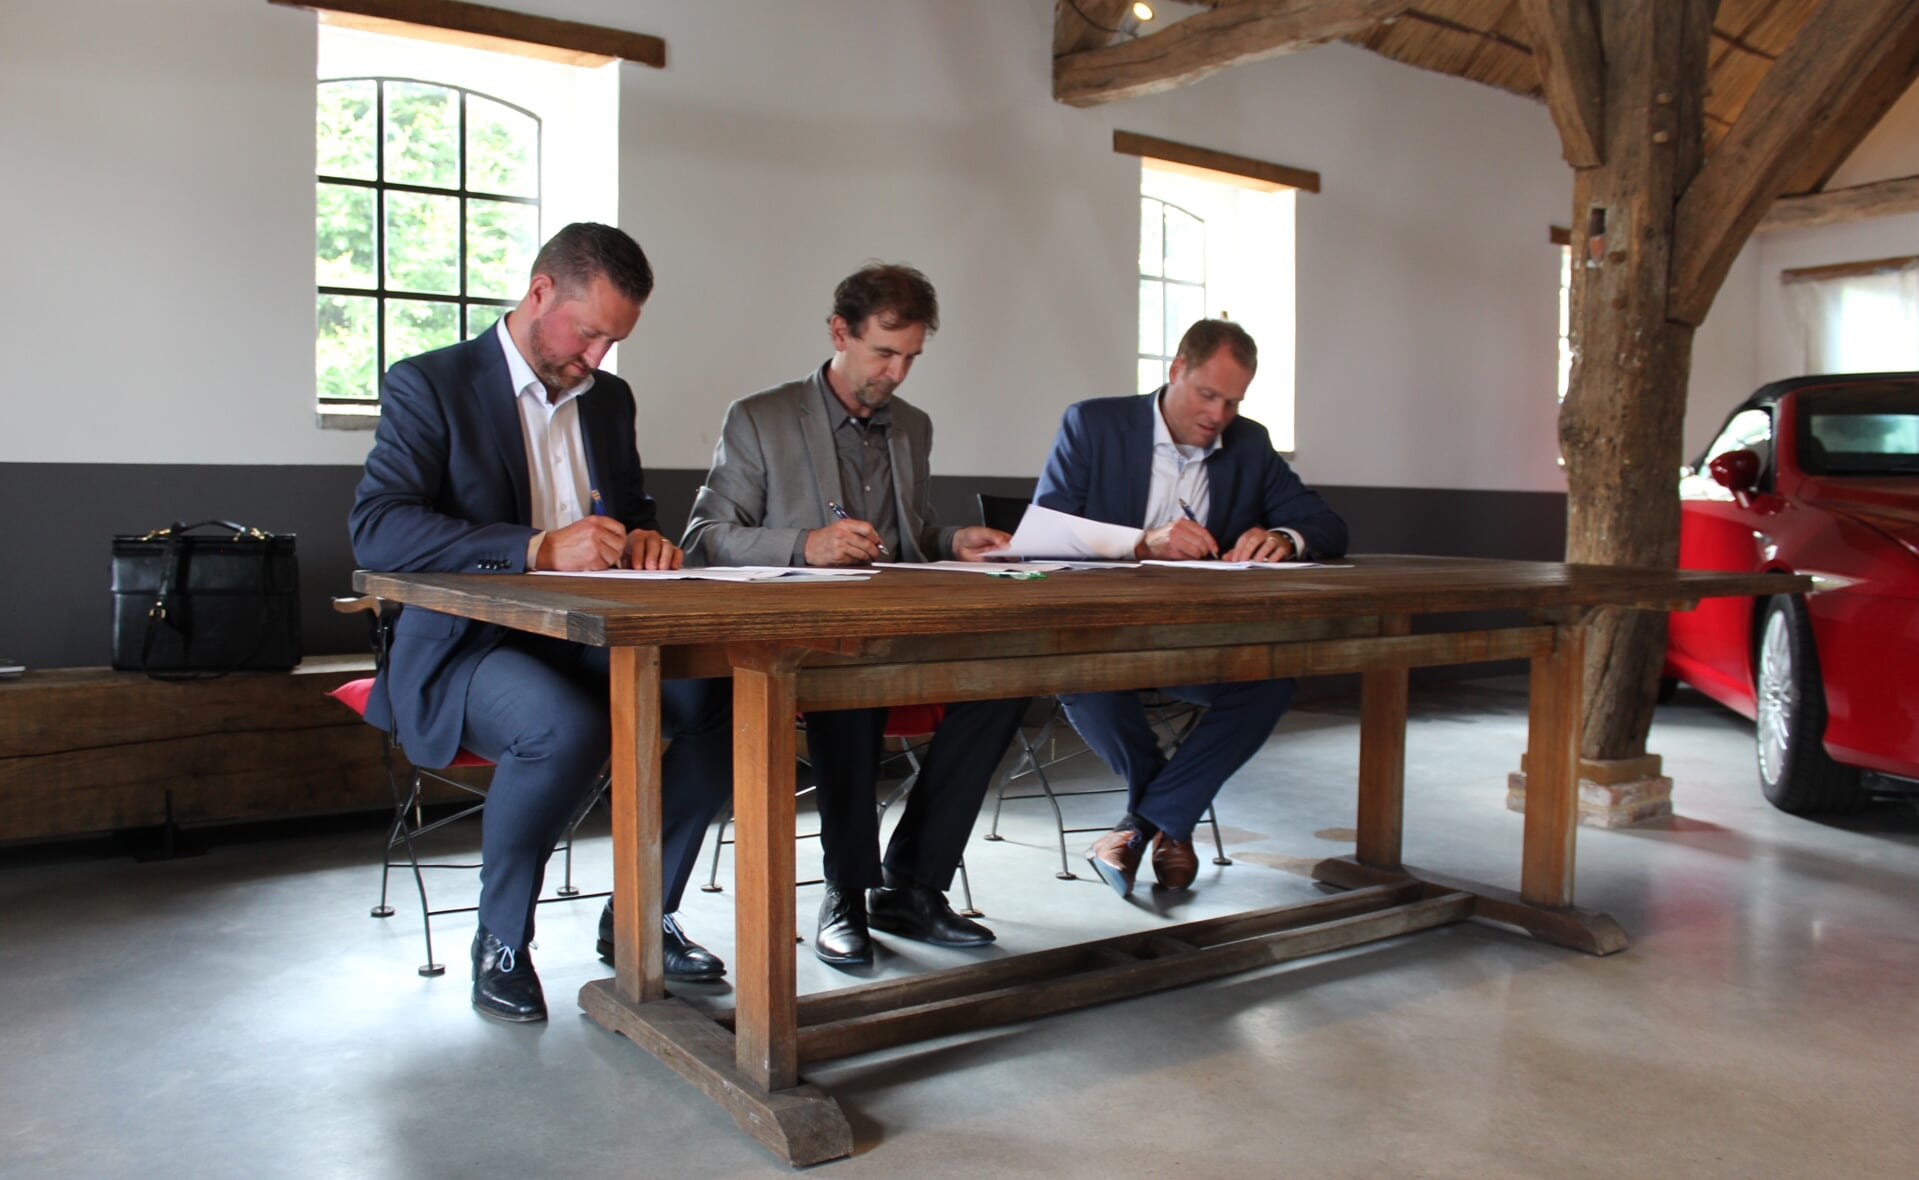 In boerderij Den Eijngel zetten John van der Doelen (Hazenberg), wethouder Peter van de Wiel (gemeente Boxtel) en Mark van Doorn (Janssen de Jong) woensdag hun handtekening onder de overeenkomst voor woningbouwproject Achter Den Eijngel. 